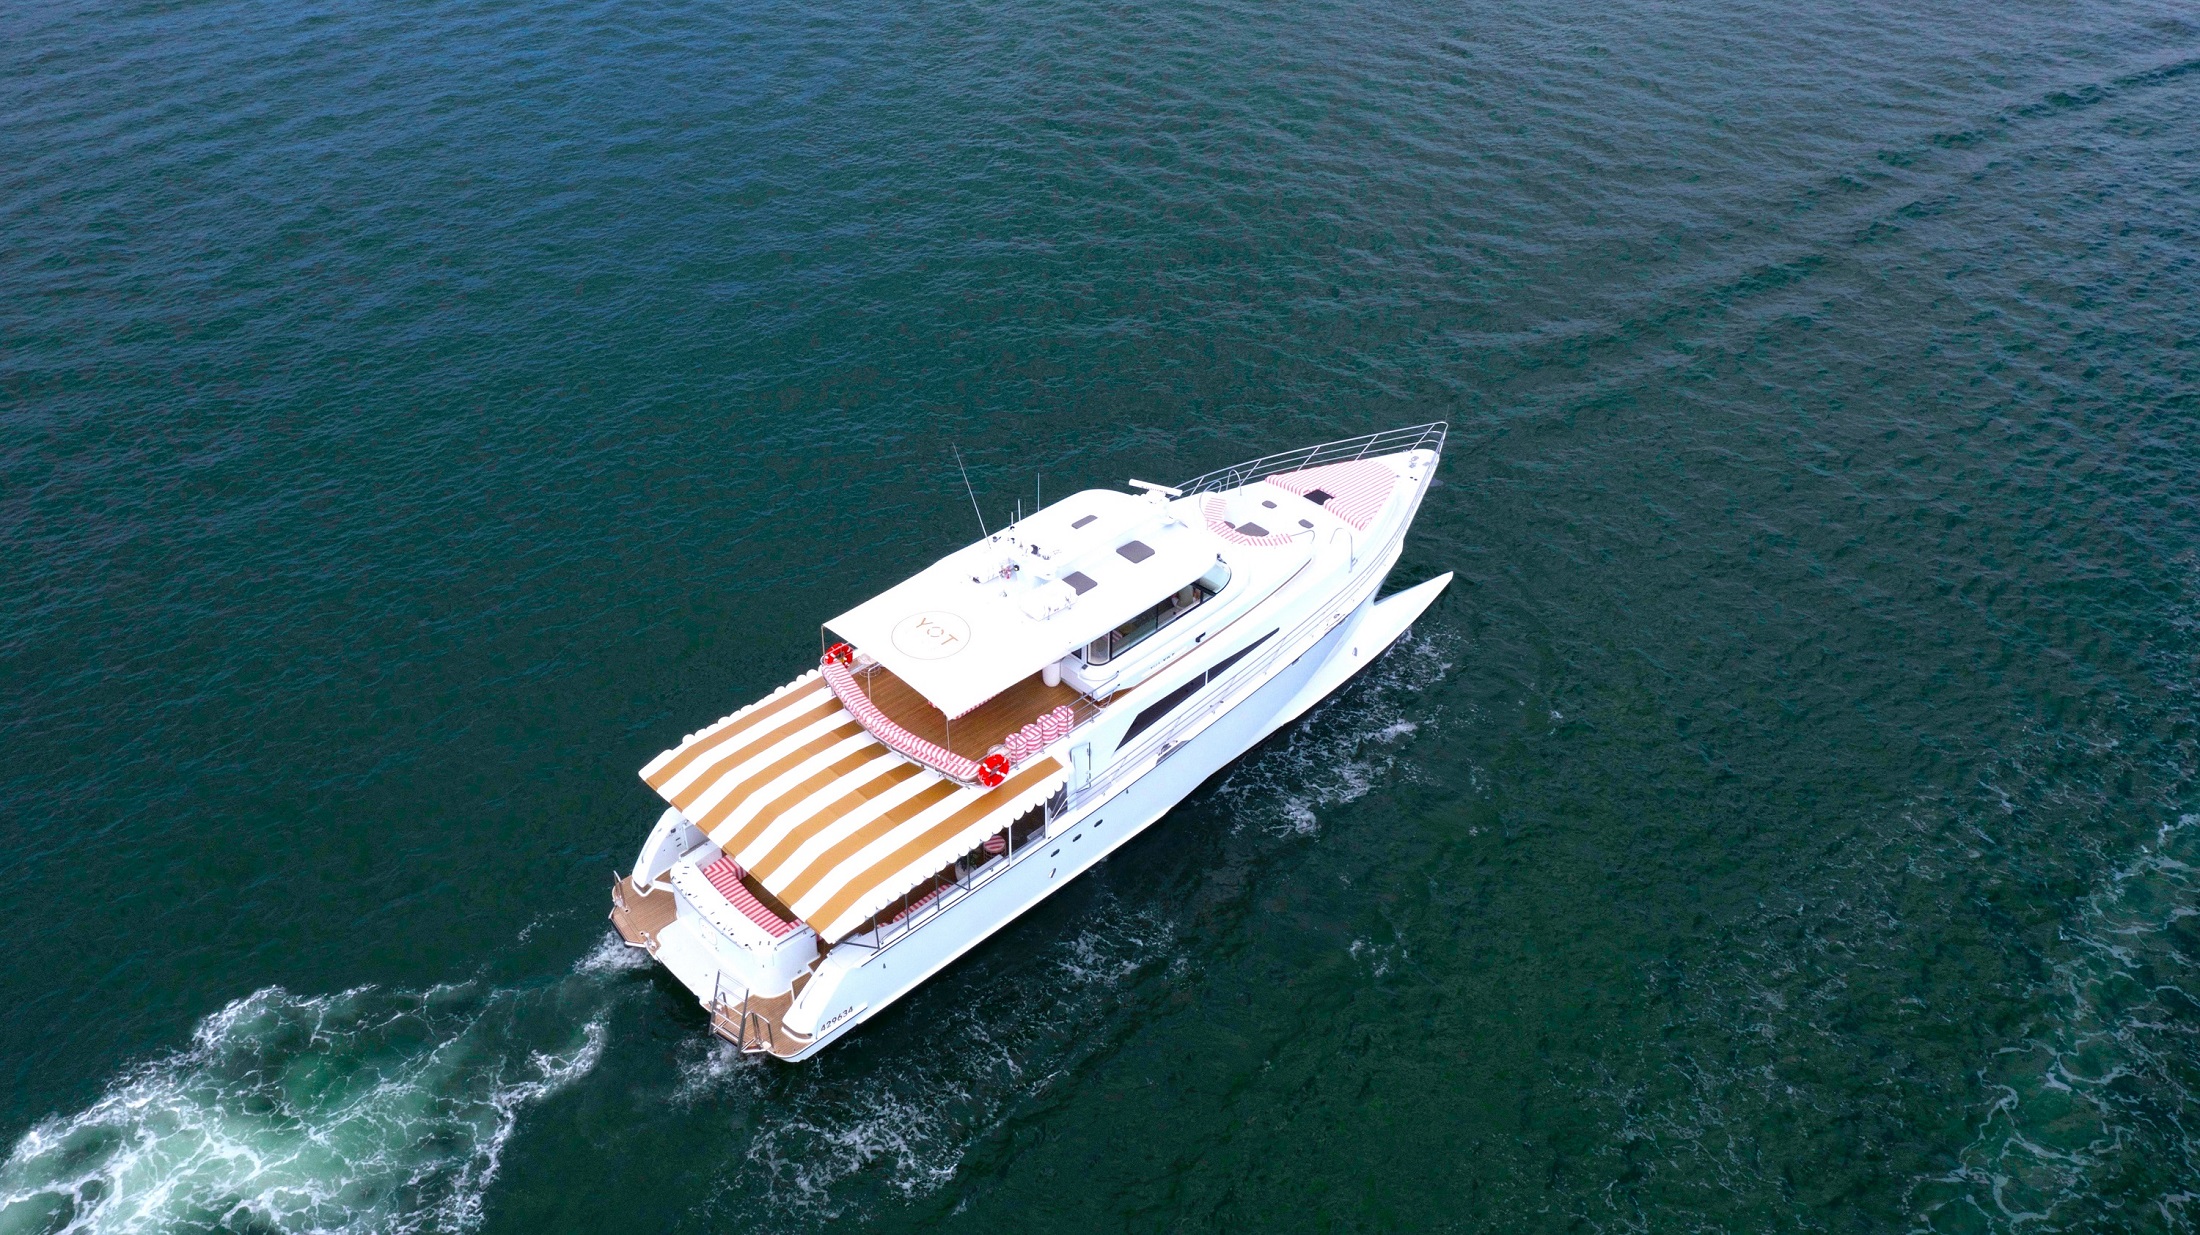 Yot vice Brisbane charter yacht